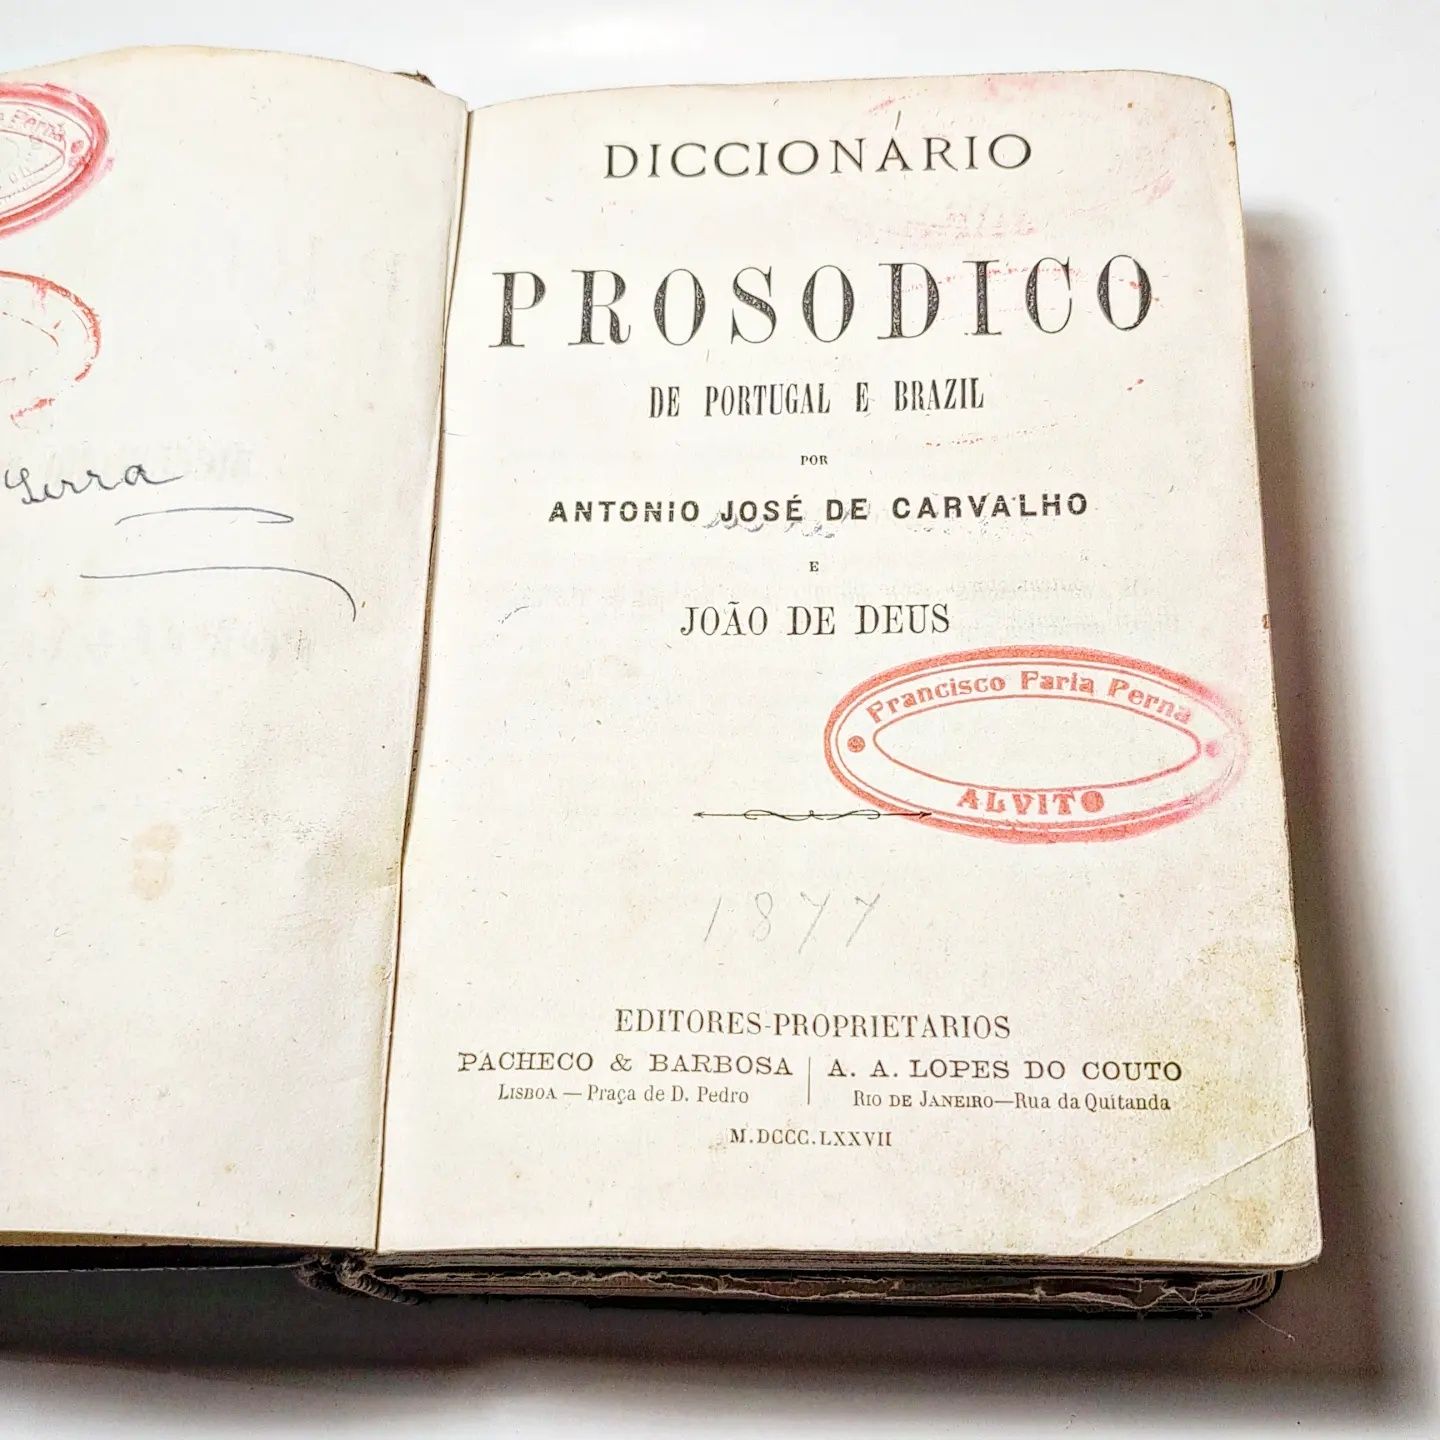 Diccionario Prosodico de Portugal e Brazil

António José de Carvalho
e